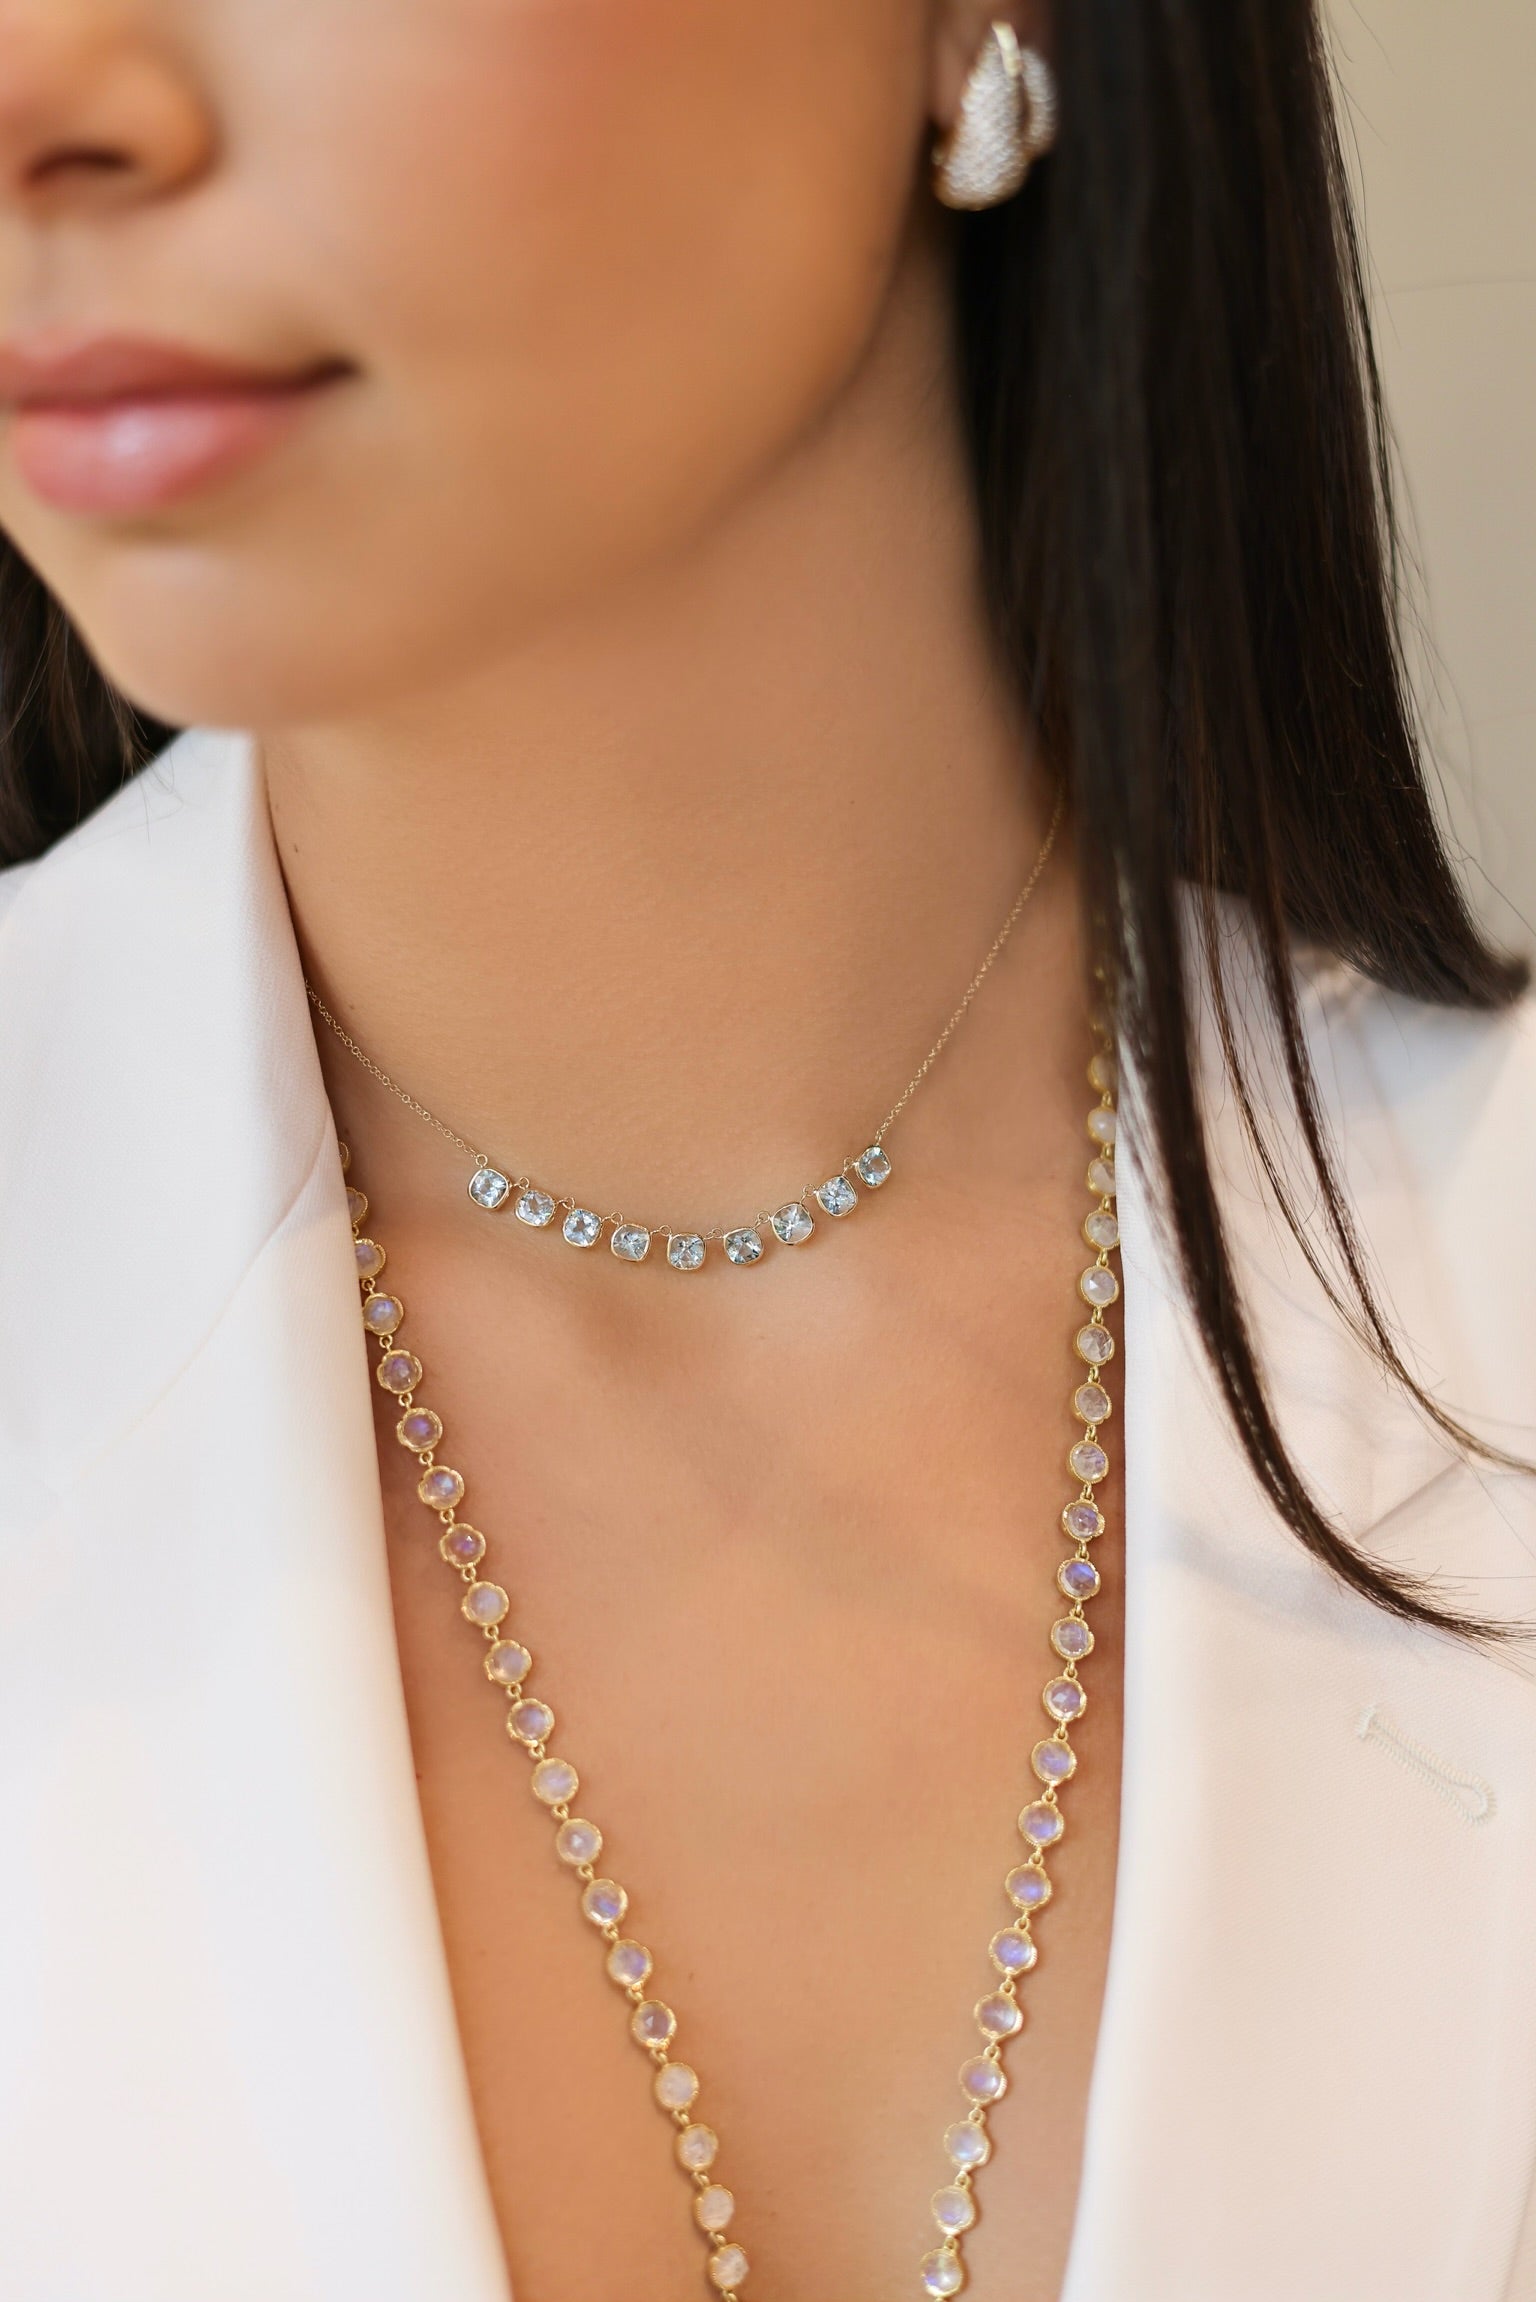 The Lena Petite Aquamarine Necklace